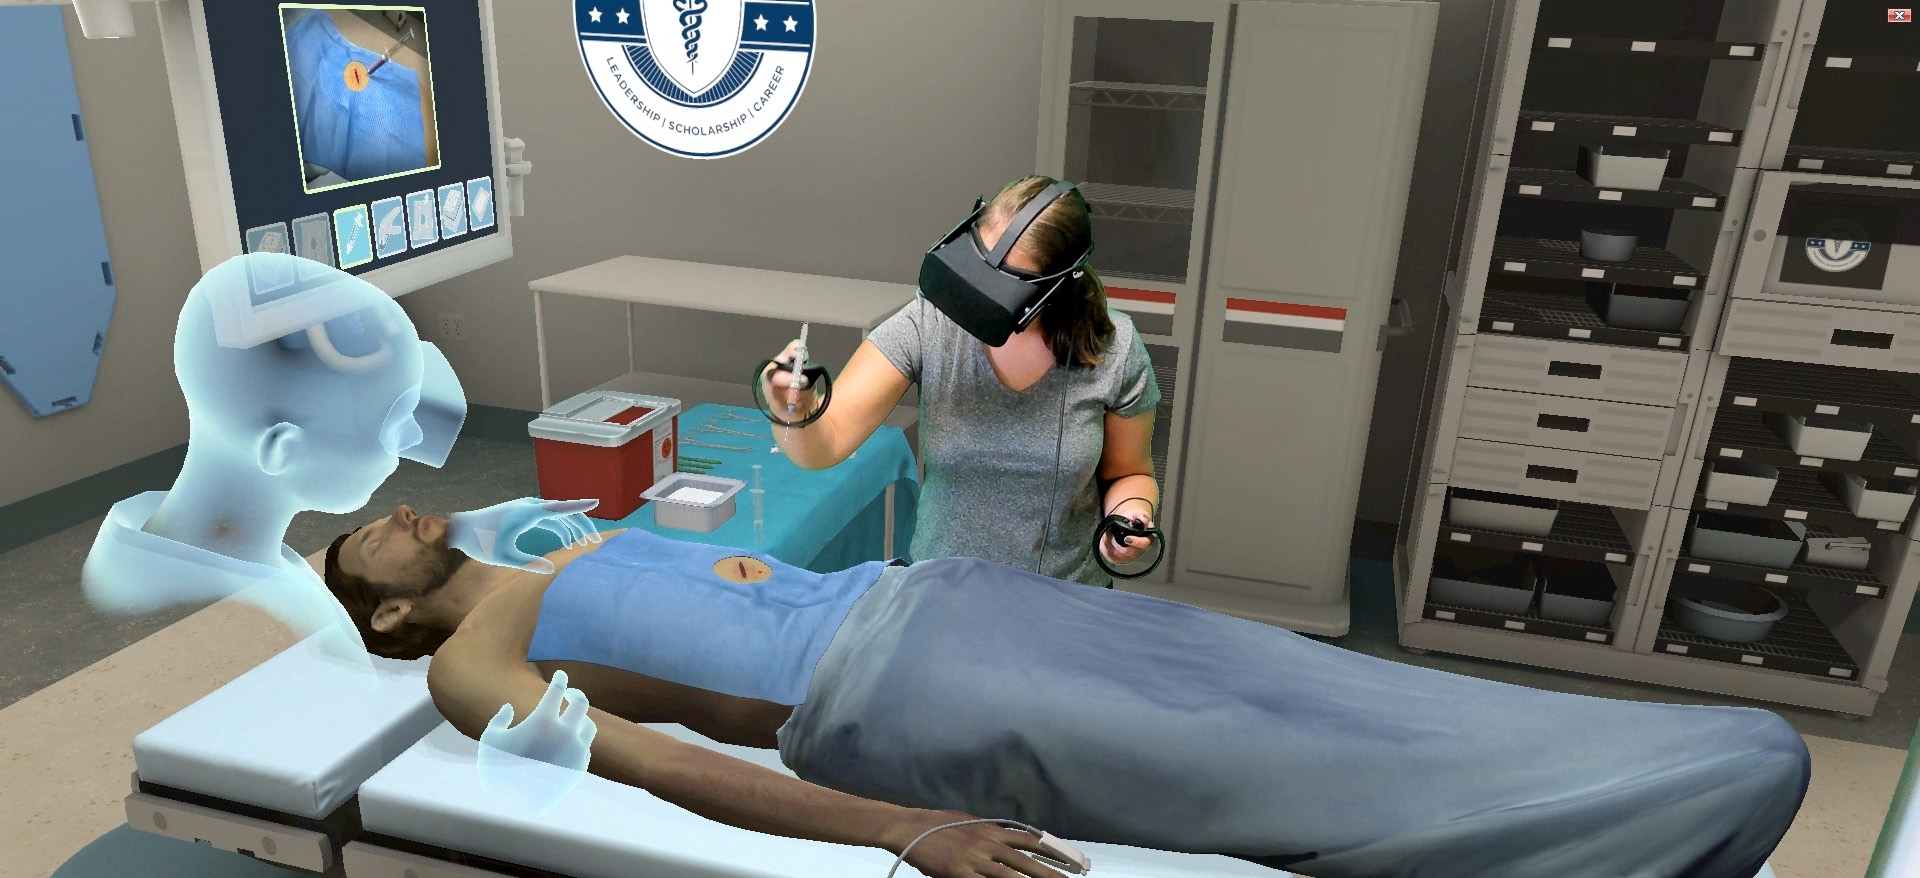 Симулятор куннилингуса сладкой киски смотреть в VR-очках